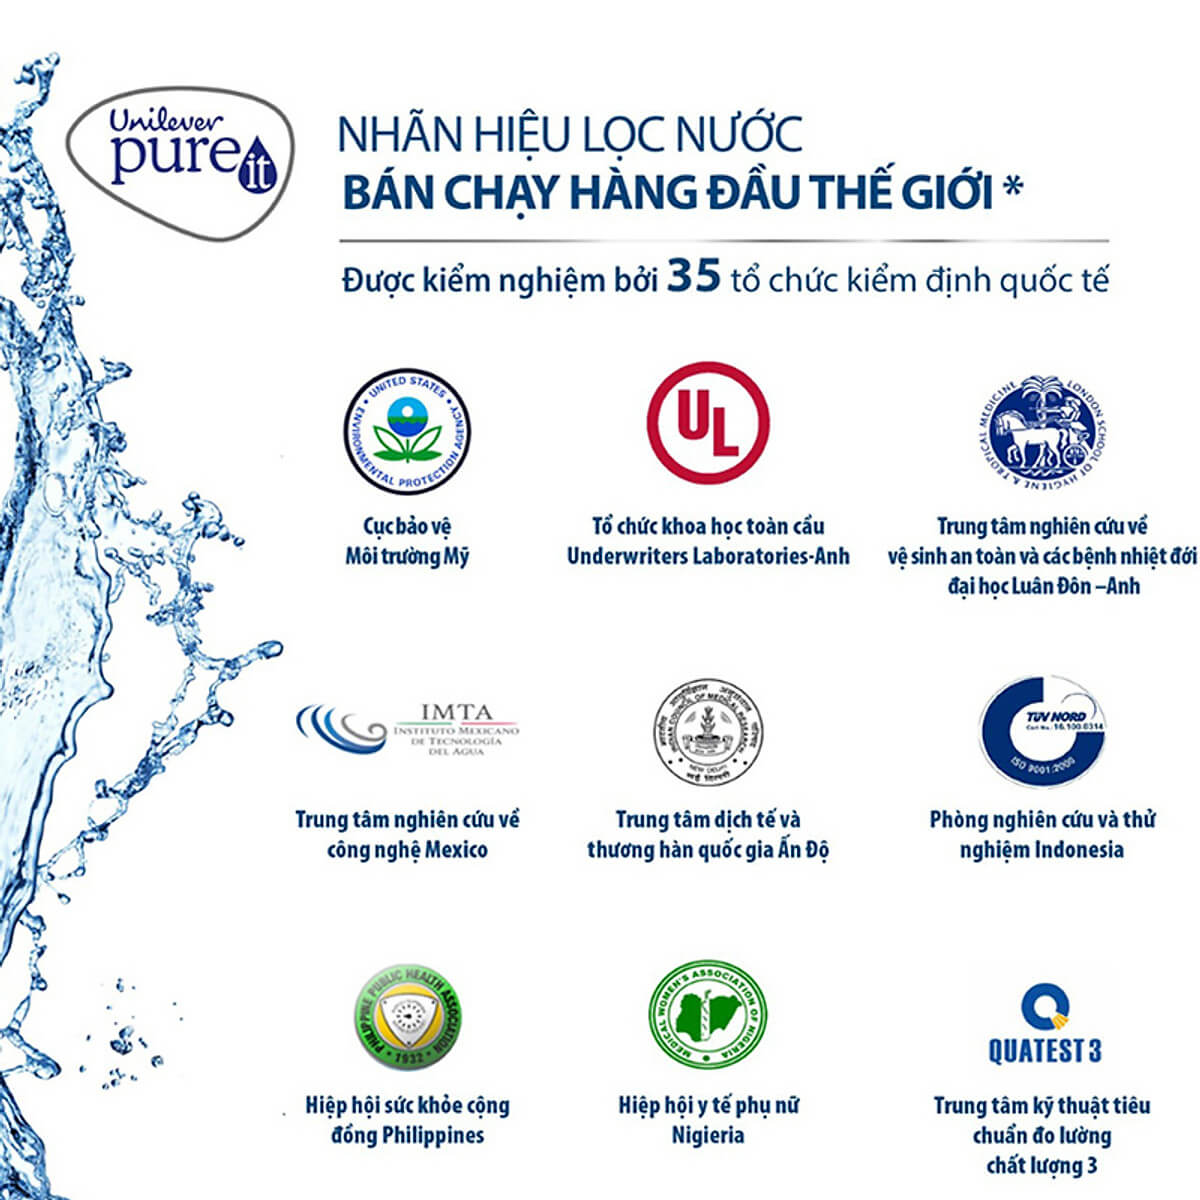 Chiếc máy lọc nước Pureit Excella đến từ thương hiệu bán chạy hàng đầu thế giới thuộc tập đoàn Unilever cho bạn yên tâm sử dụng với chất lượng nước lọc sạch khuẩn